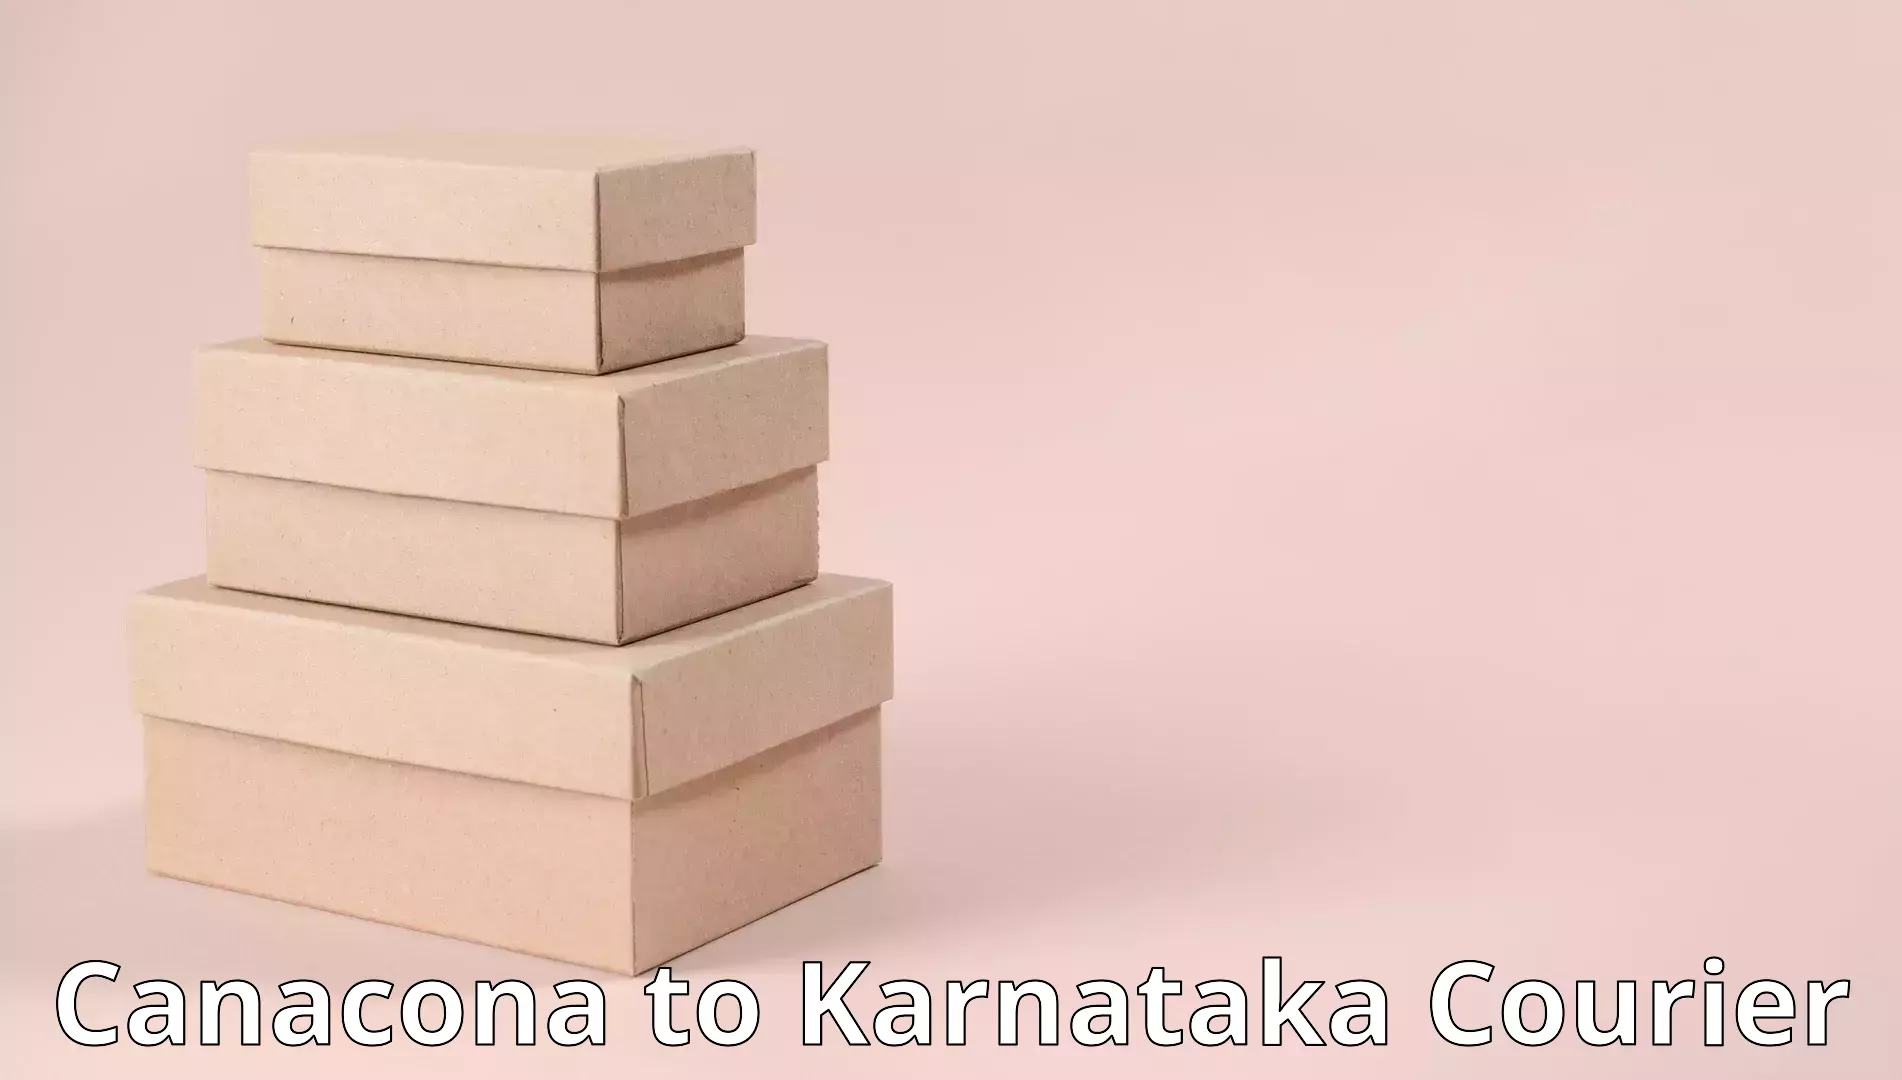 Personalized moving plans Canacona to Karnataka